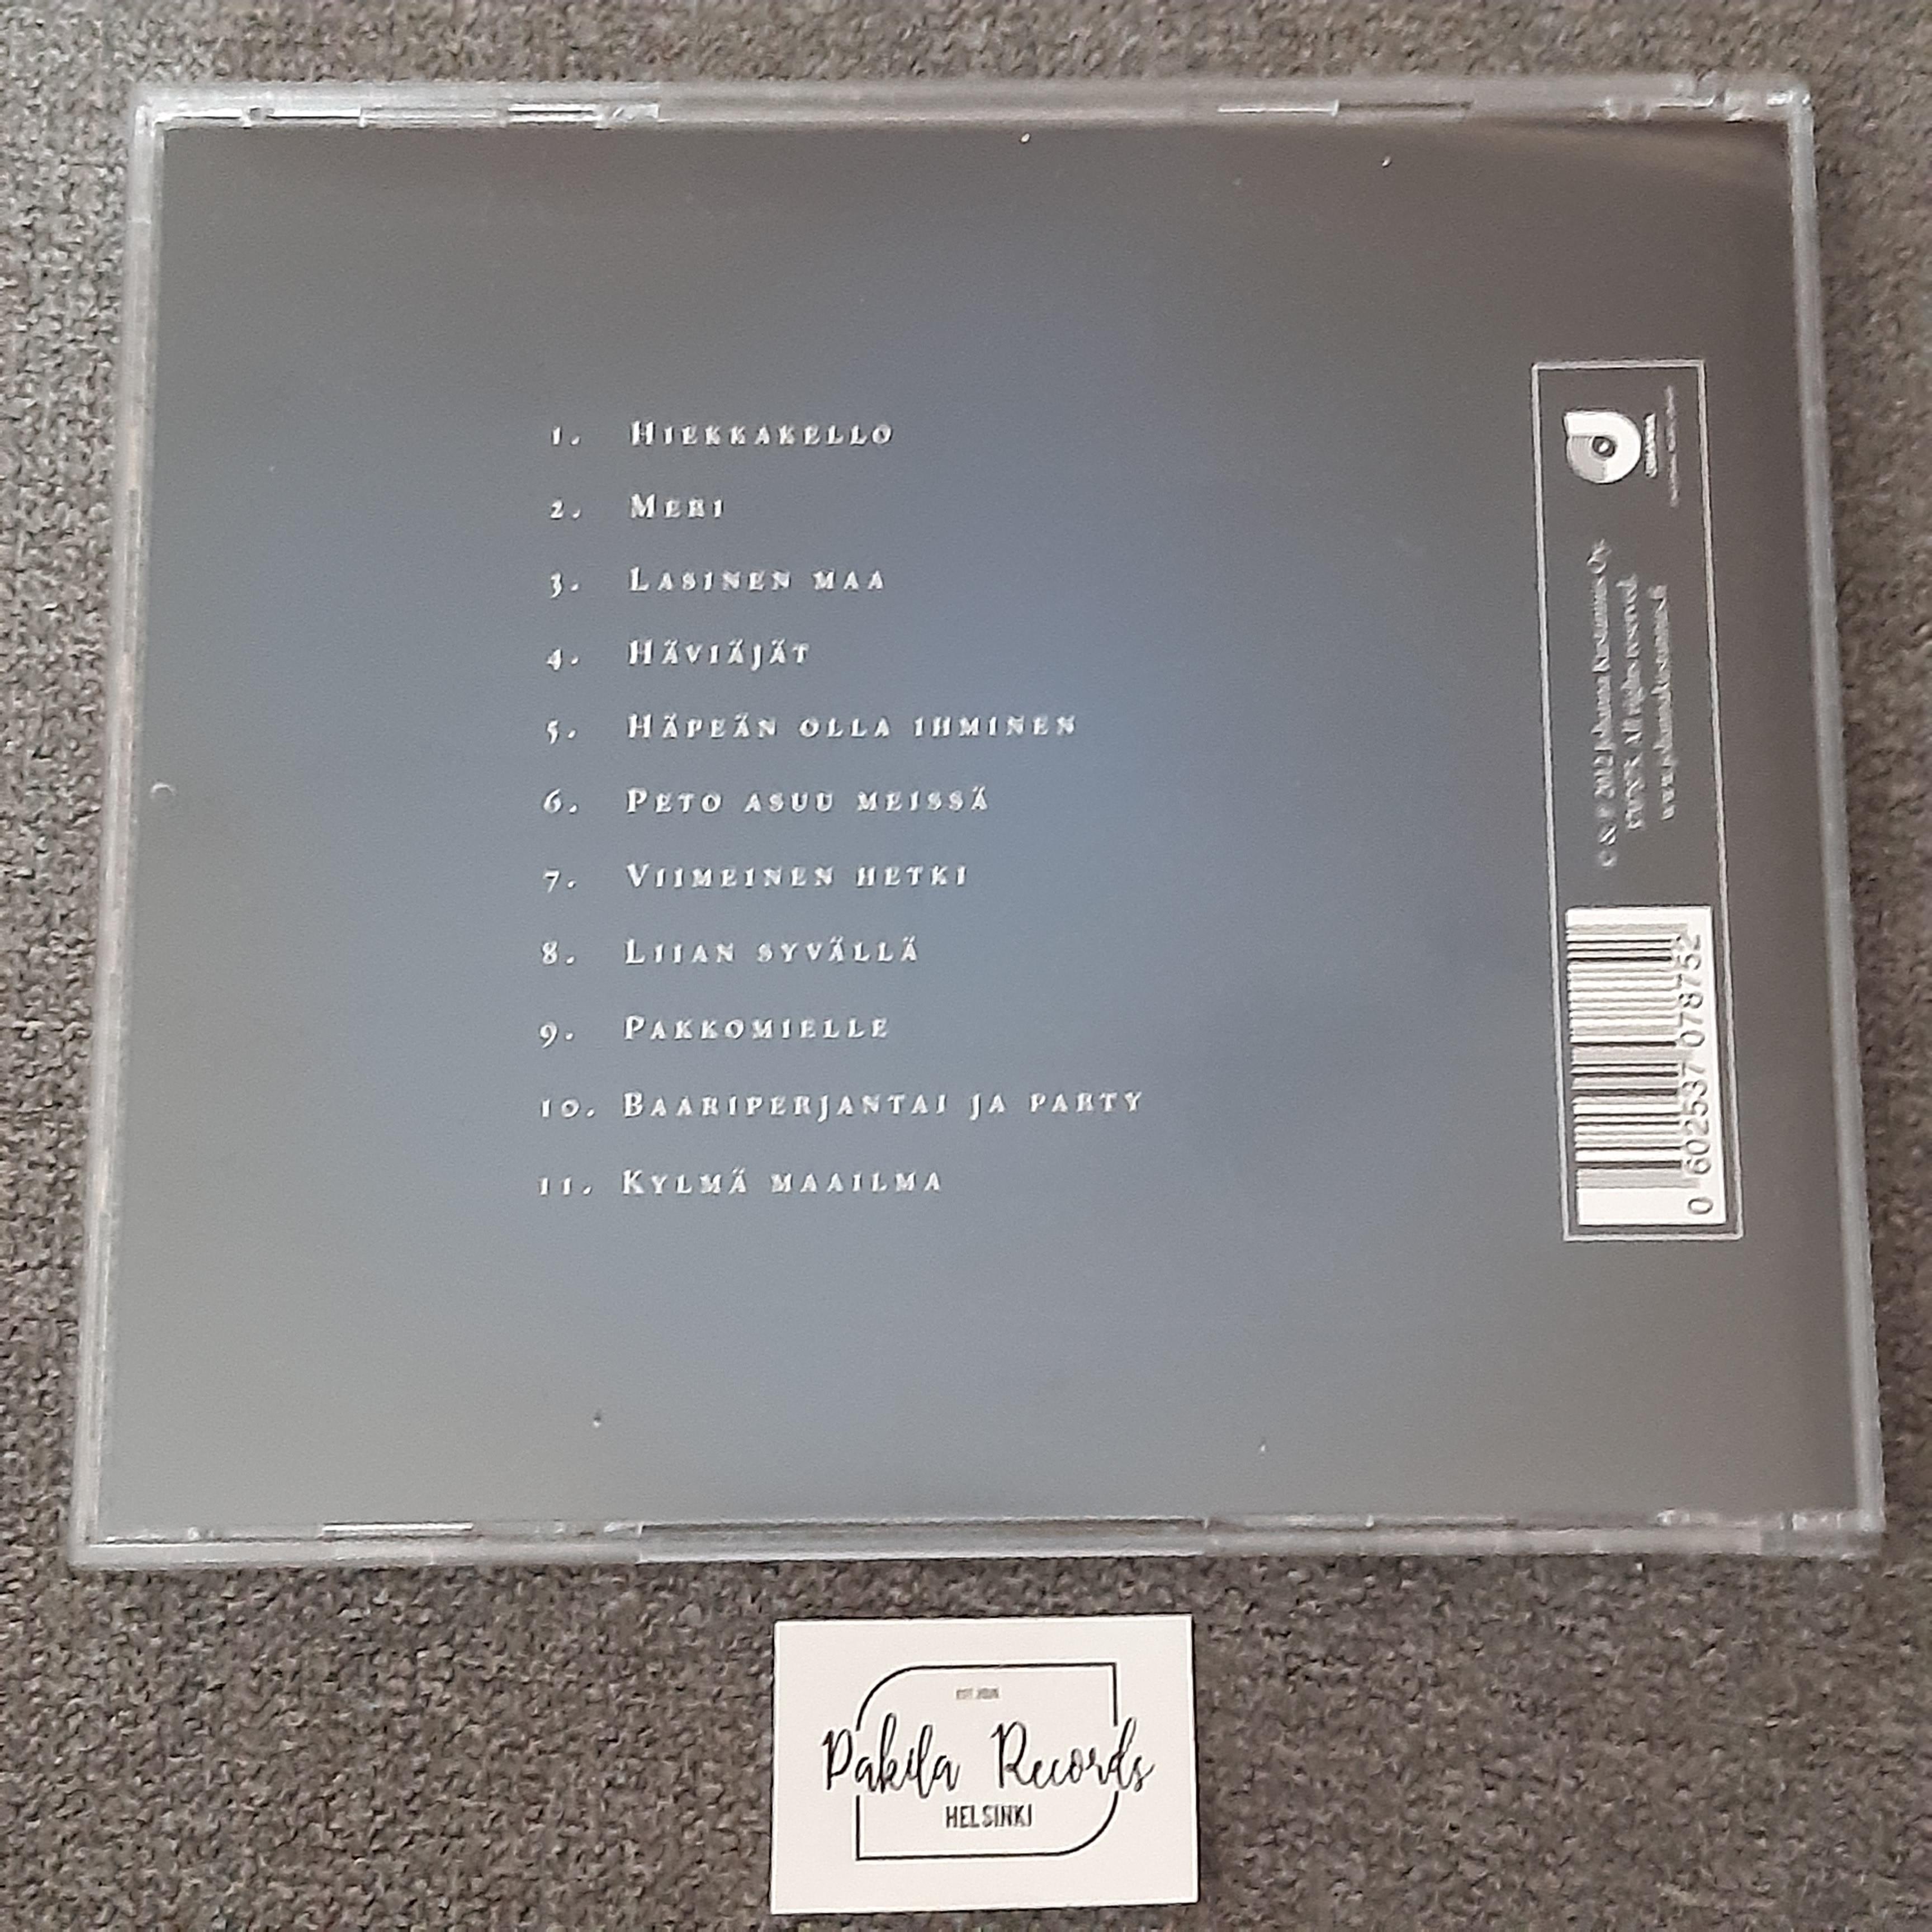 Mikko Herranen - Kylmä maailma - CD (käytetty)